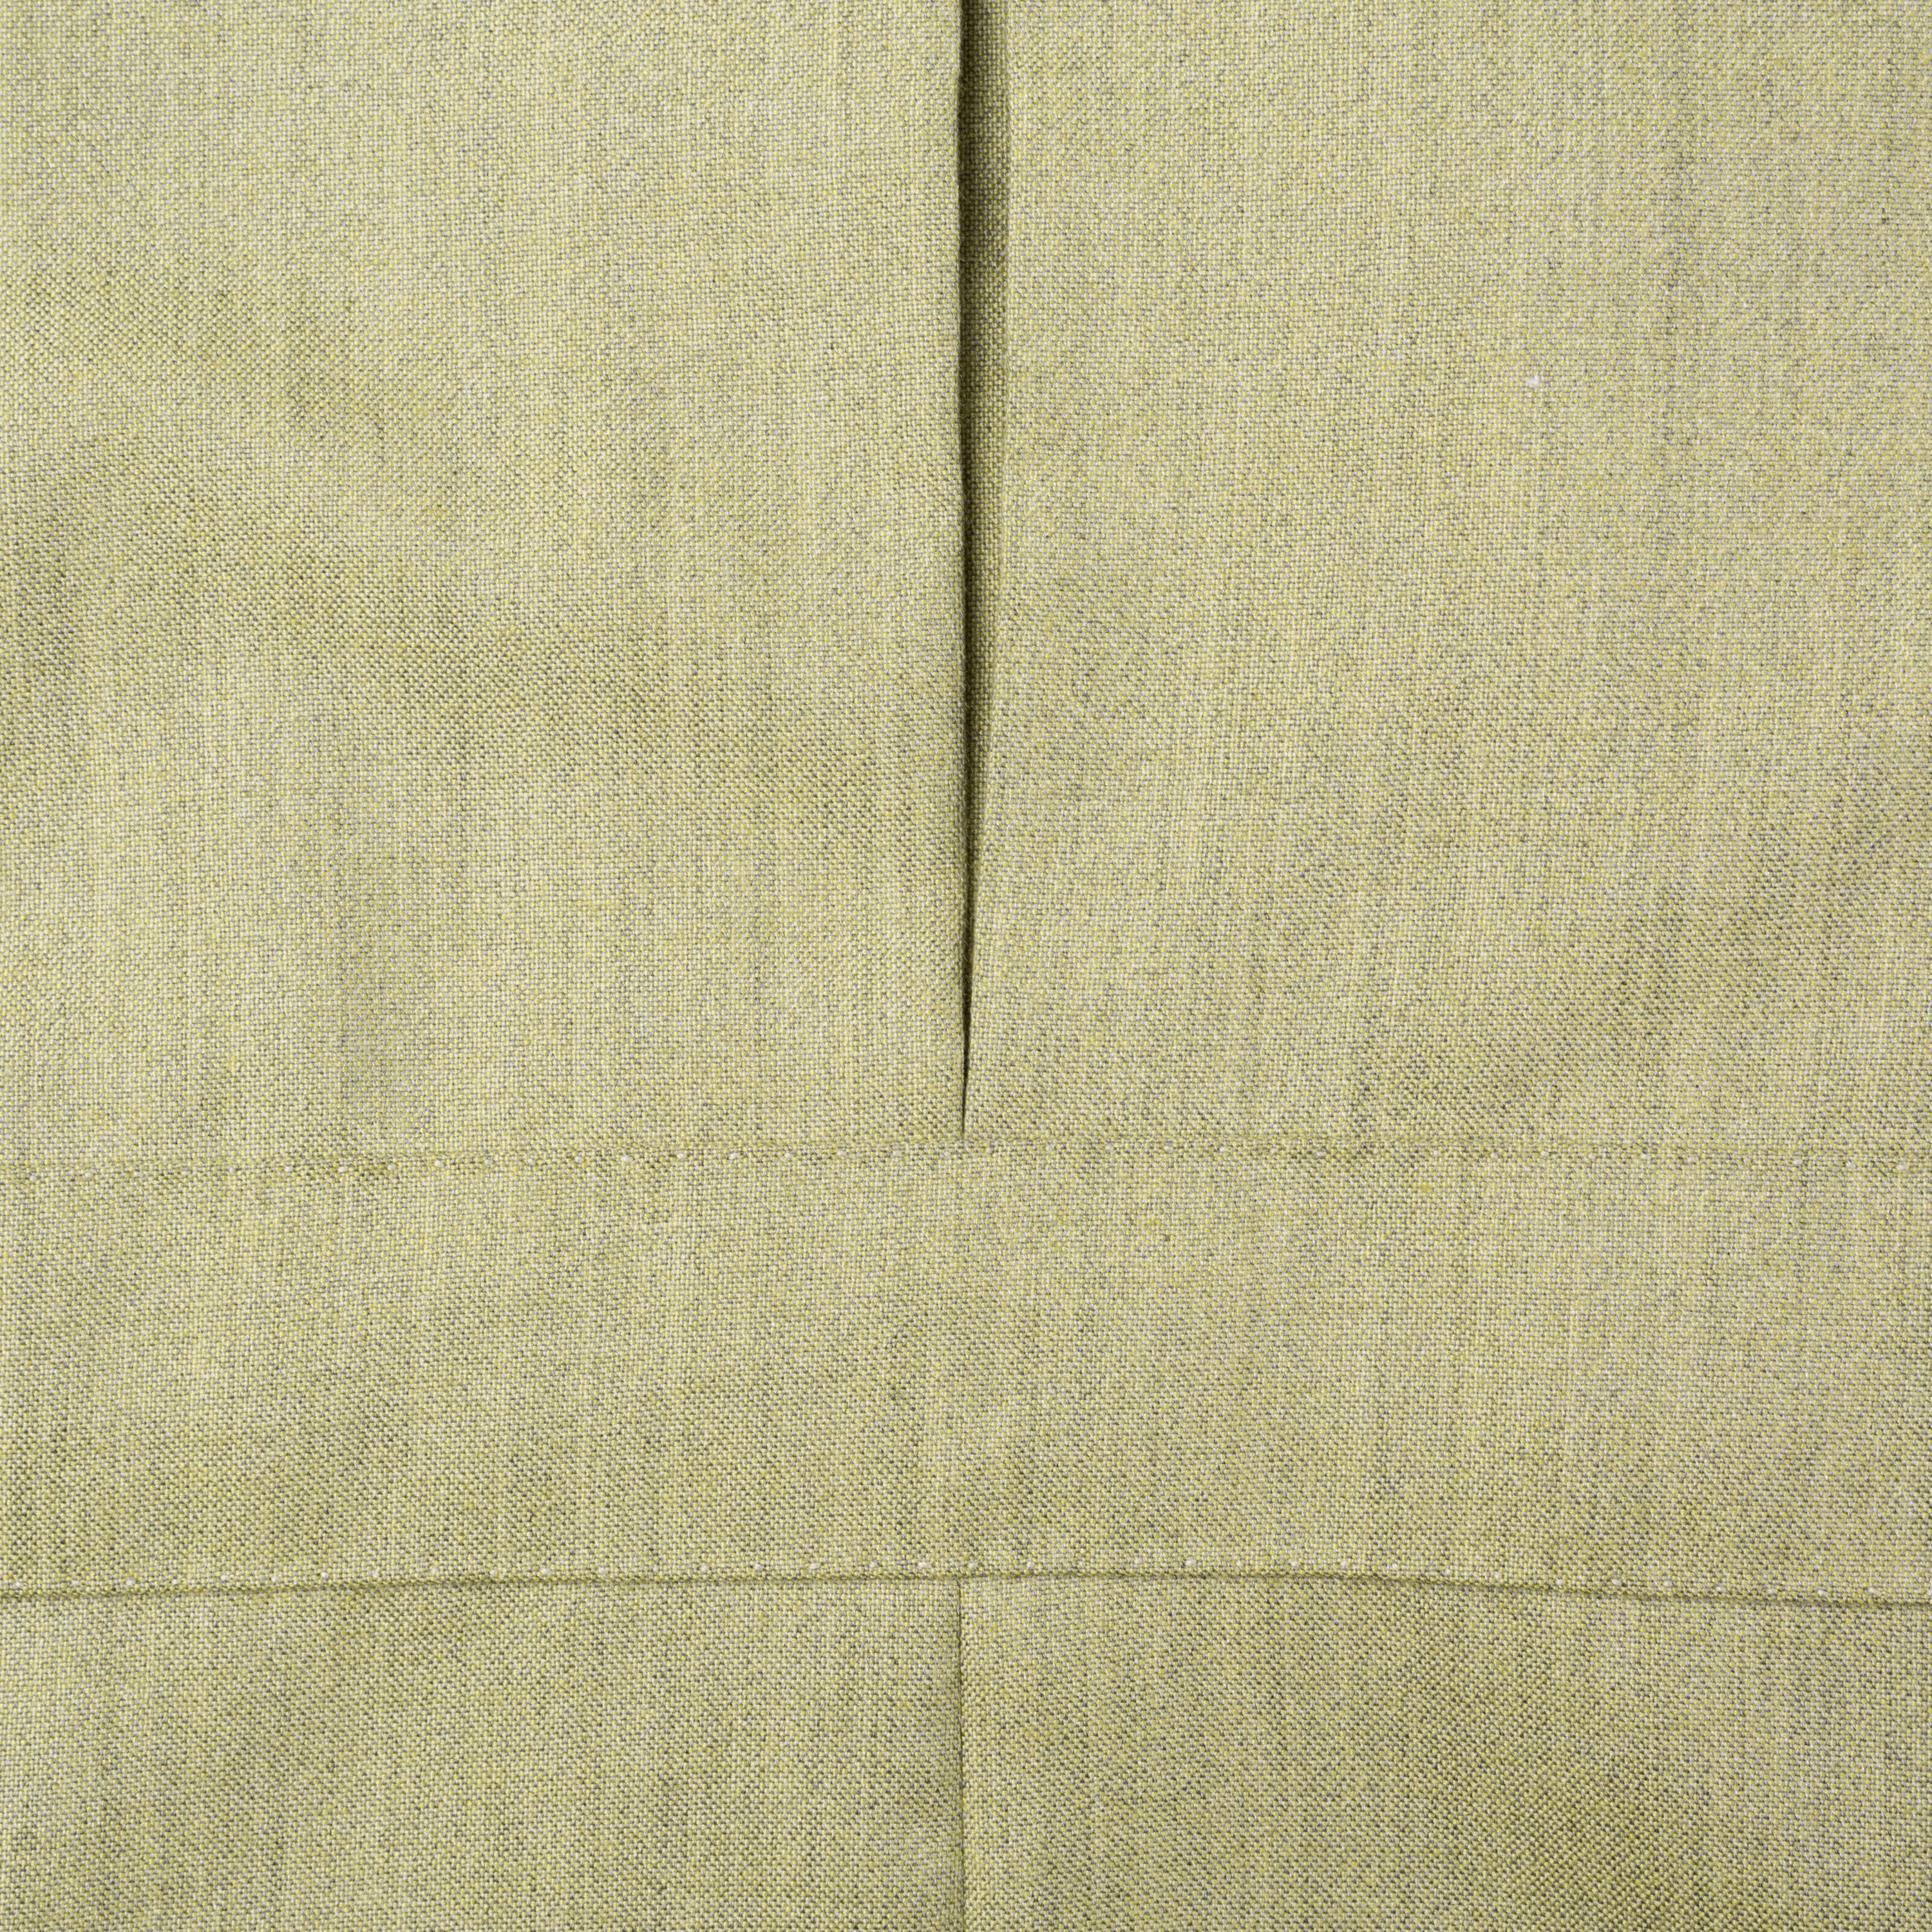 SARTORIA CASTANGIA Handmade Green Cashmere-Silk Jacket EU 50 NEW US 40 CASTANGIA